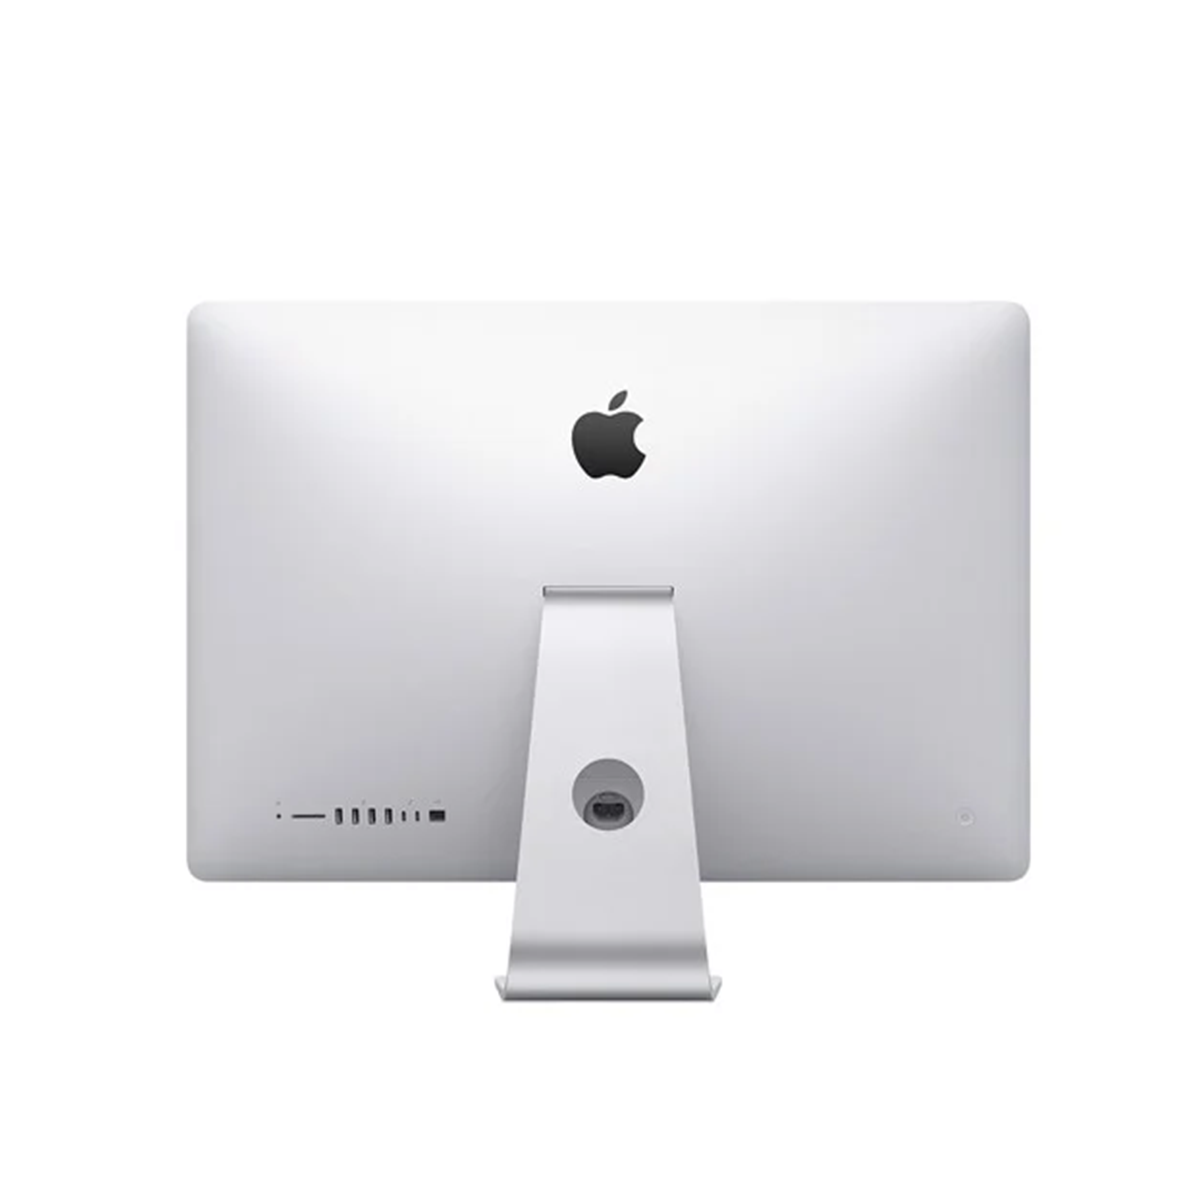  iMac 5K 2019 MRR12 (27